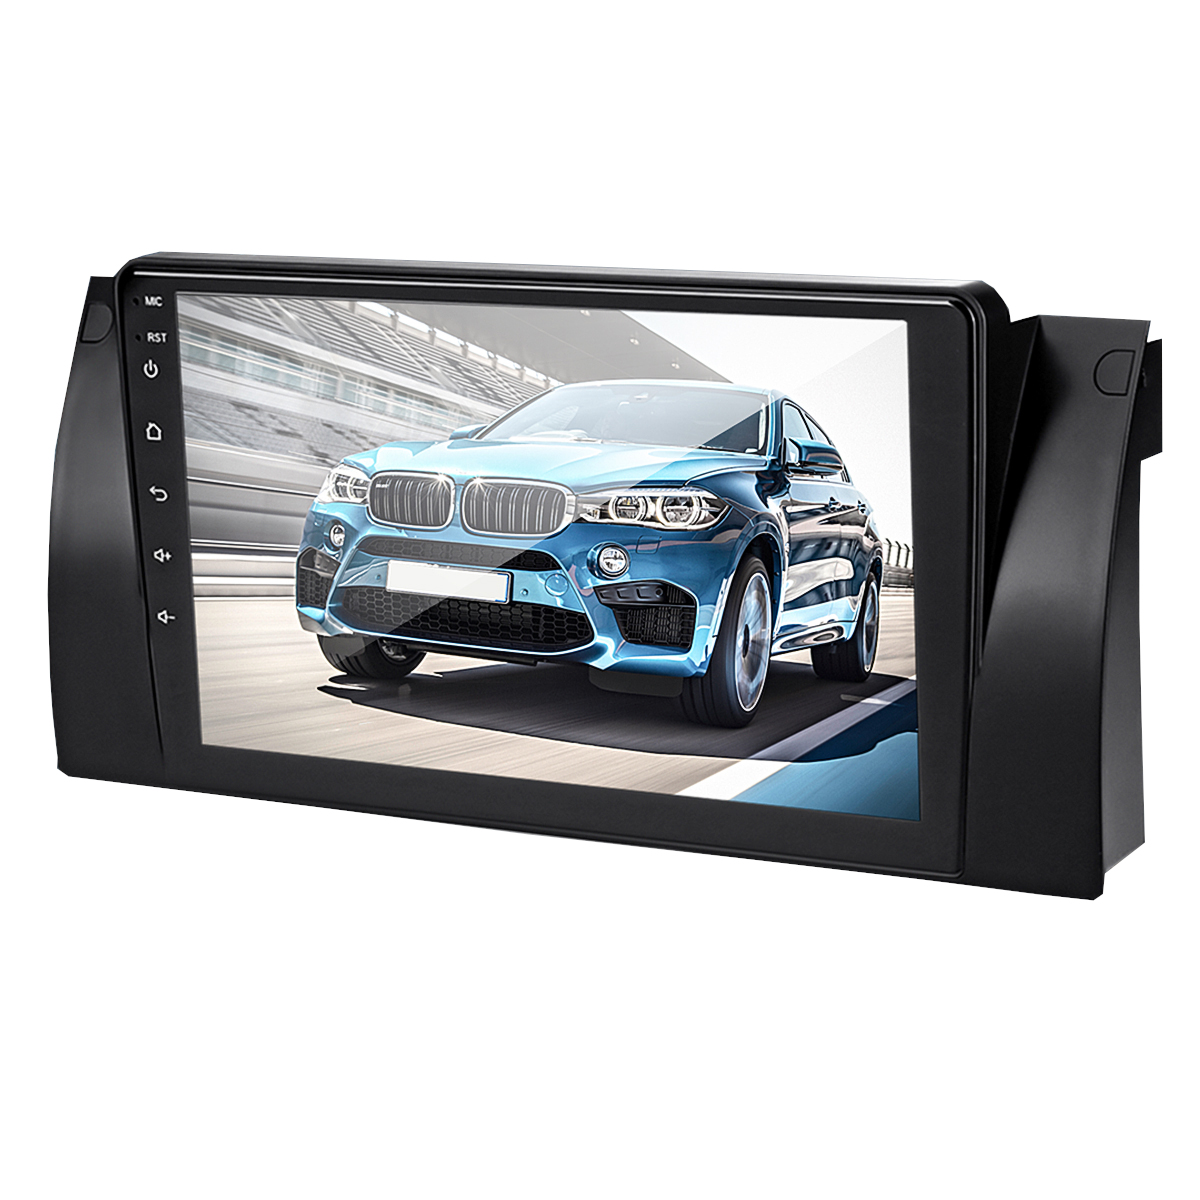 

9 дюймов Android 8.1 Авто Стерео Радио MP5-плеер Dash Video Четырехъядерный 1 + 16GB Wifi GPS Встроенный Микрофон Для BMW E38 E39 E53 X5